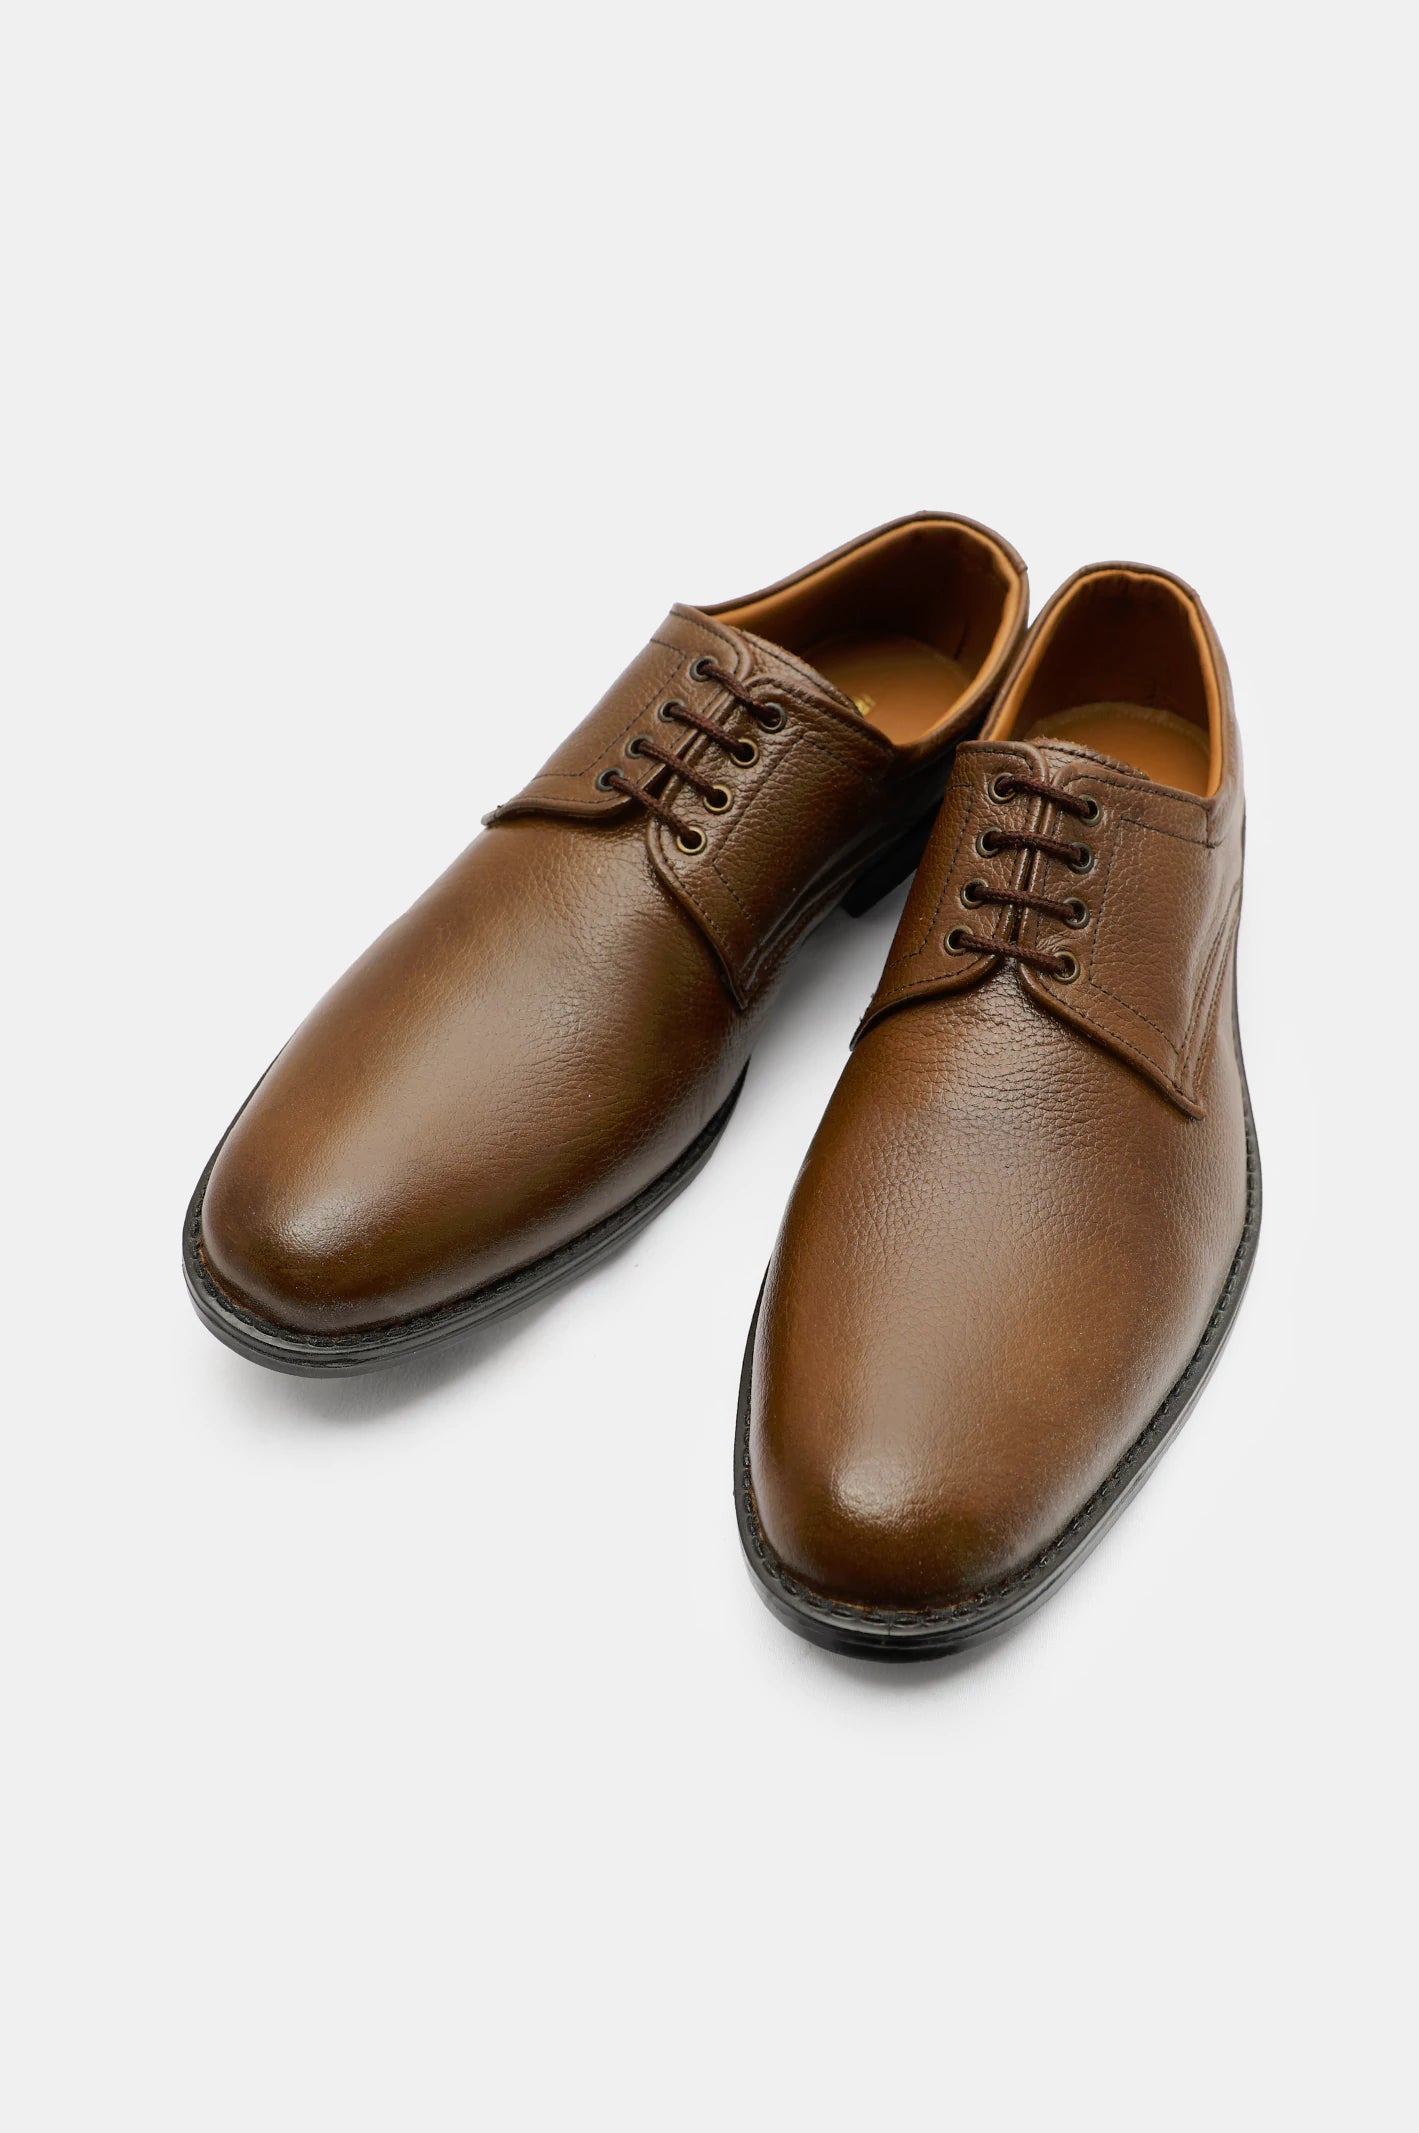 Formal Shoes For Men